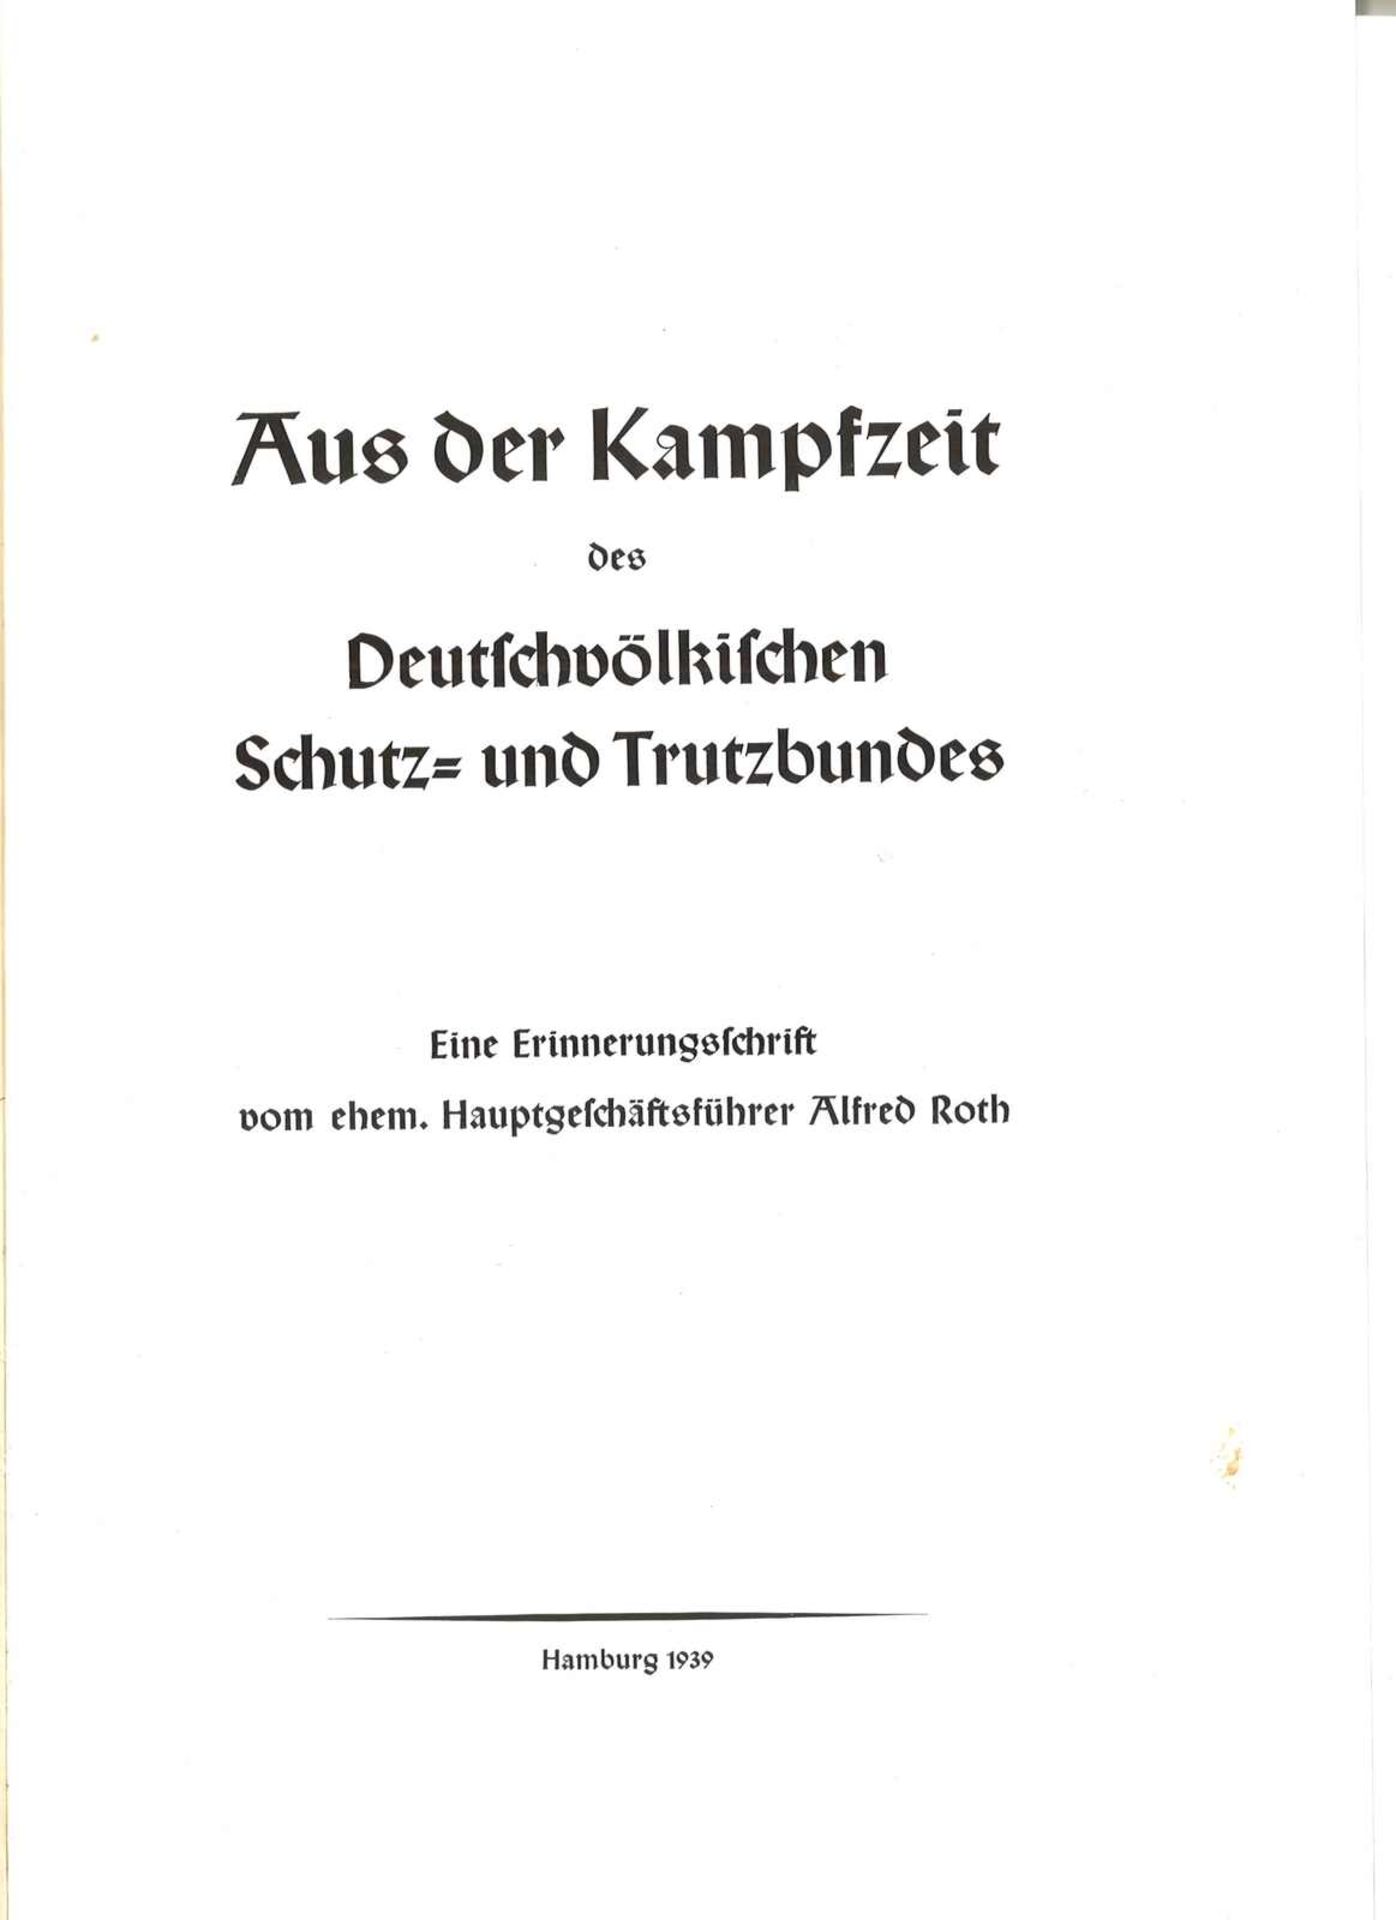 "Aus der Kampfzeit" des deutschvolkischen Schutz-und Trutzbundes Hamburg 1939, seltene Ausgabe"From